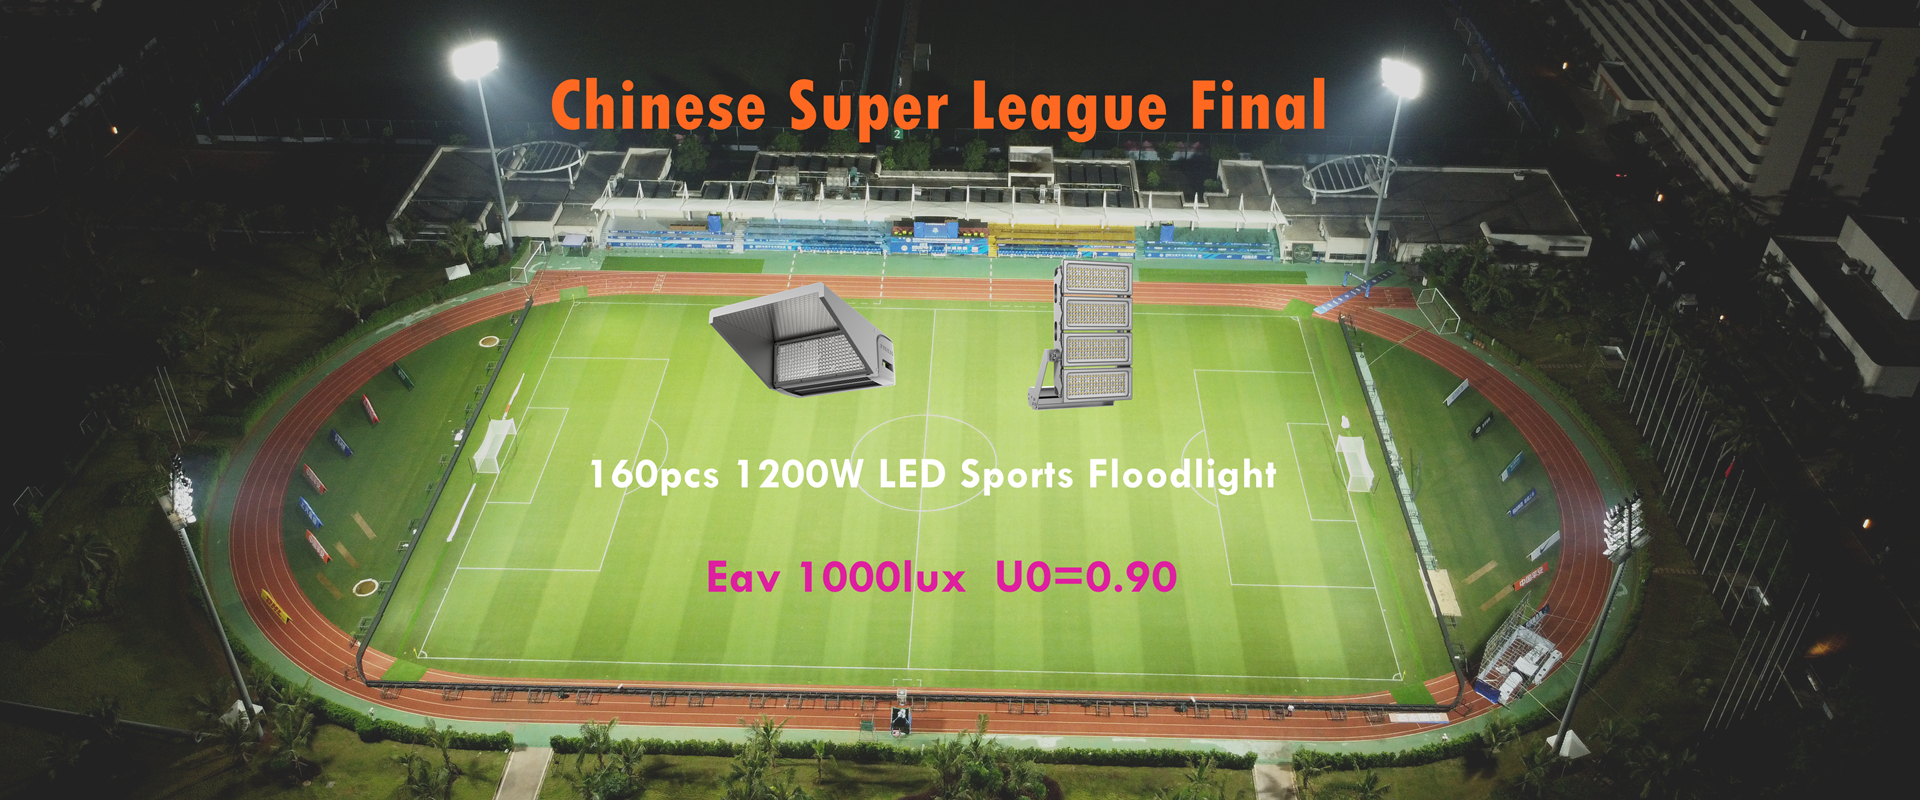 Lampu sorot olahraga LED 1200W pikeun liga super Cina 2022 di stadion maén bal Haikou